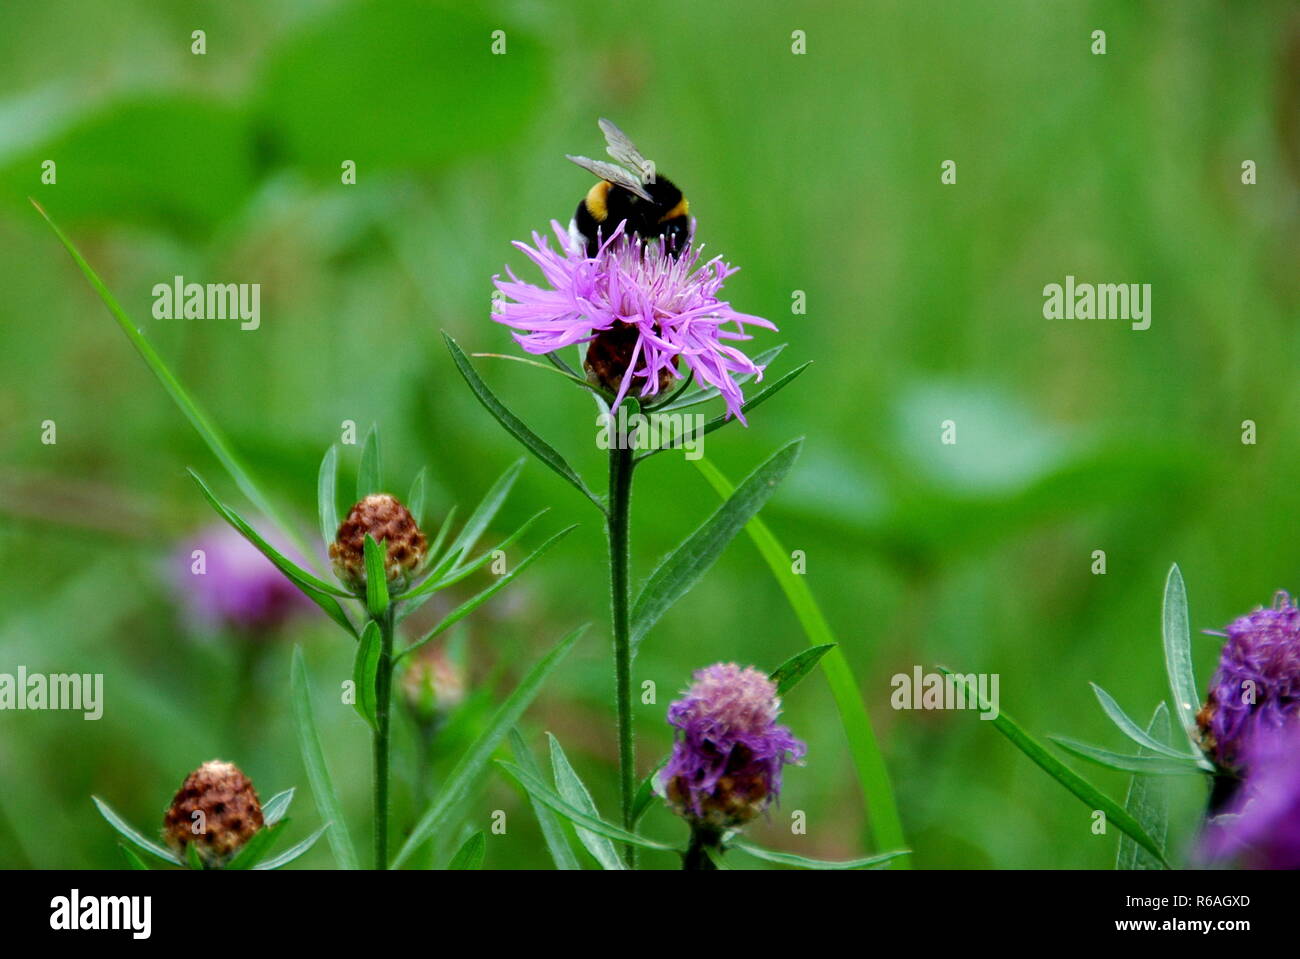 bumblebee on knapweed Stock Photo